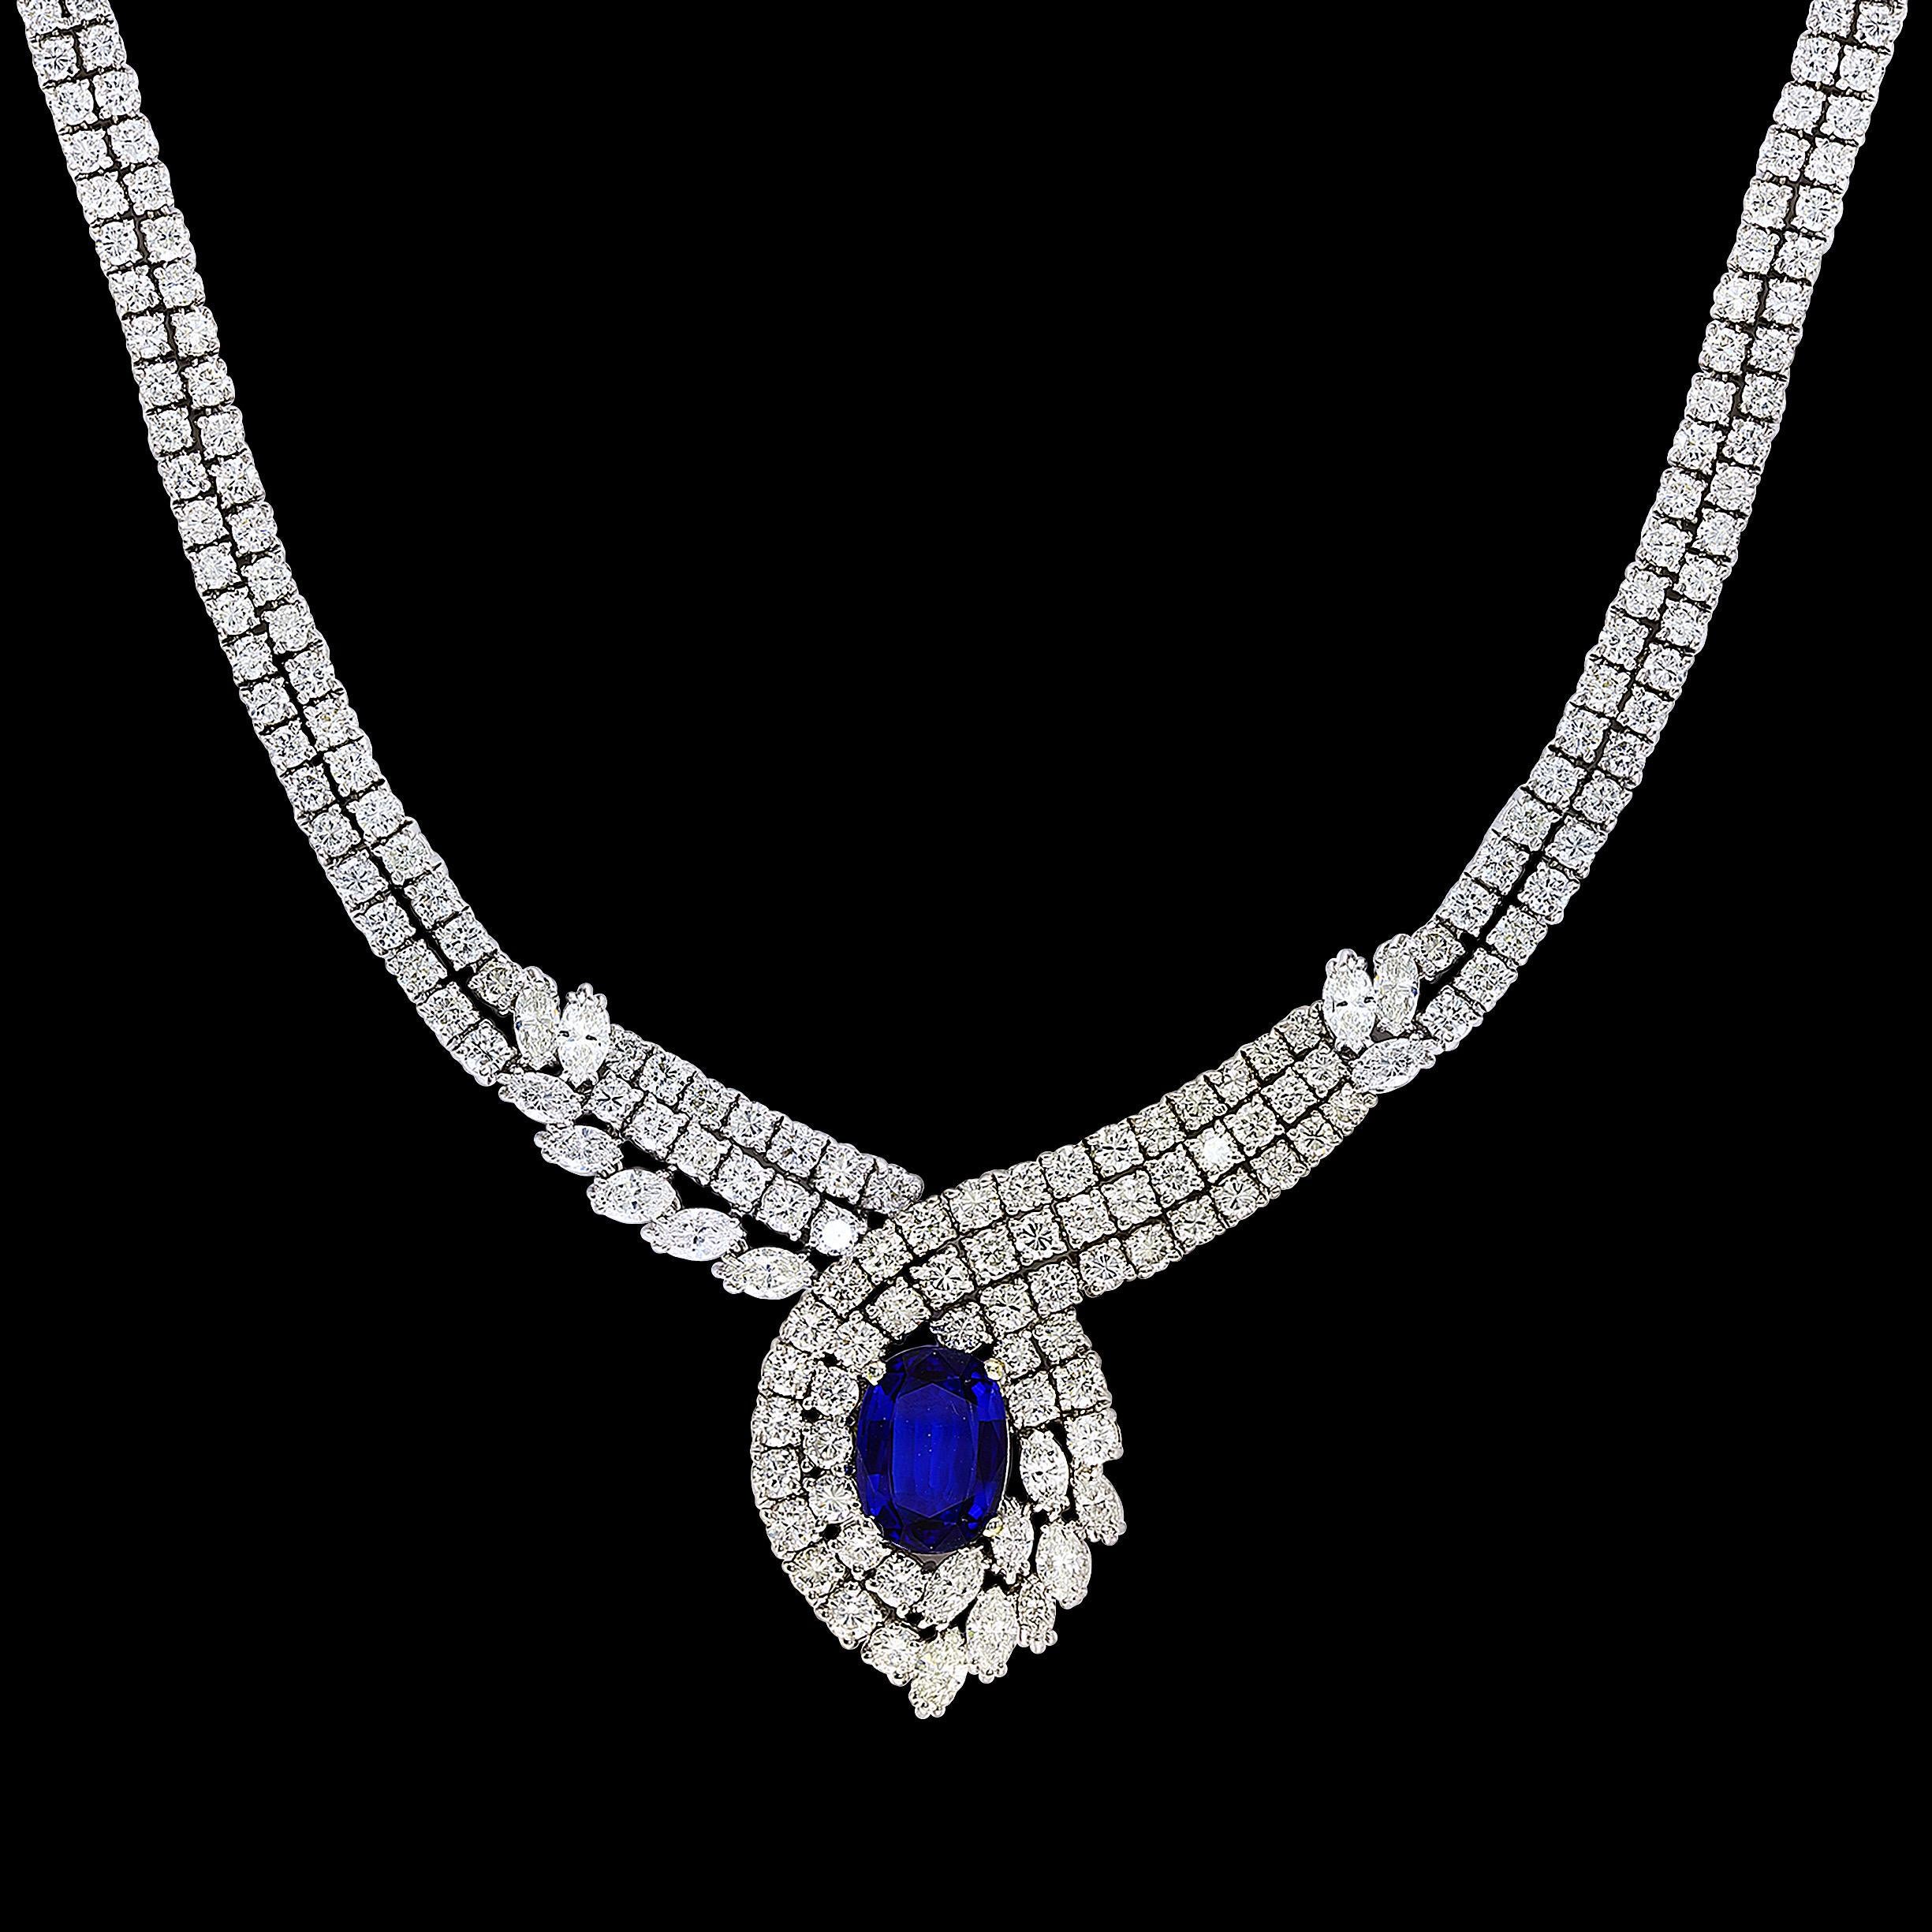 Vintage GIA zertifiziert 6,5 Karat Ceylon Saphir & 32 Karat Diamant Halskette in  18 Karat  Weiß  Gold , 66 Gm
Eine unserer Premium-Halsketten aus unserer Bridal Collection'S.
Ungefähr 32 Karat Diamanten der Qualität VS1, alle in 18 Karat Gold